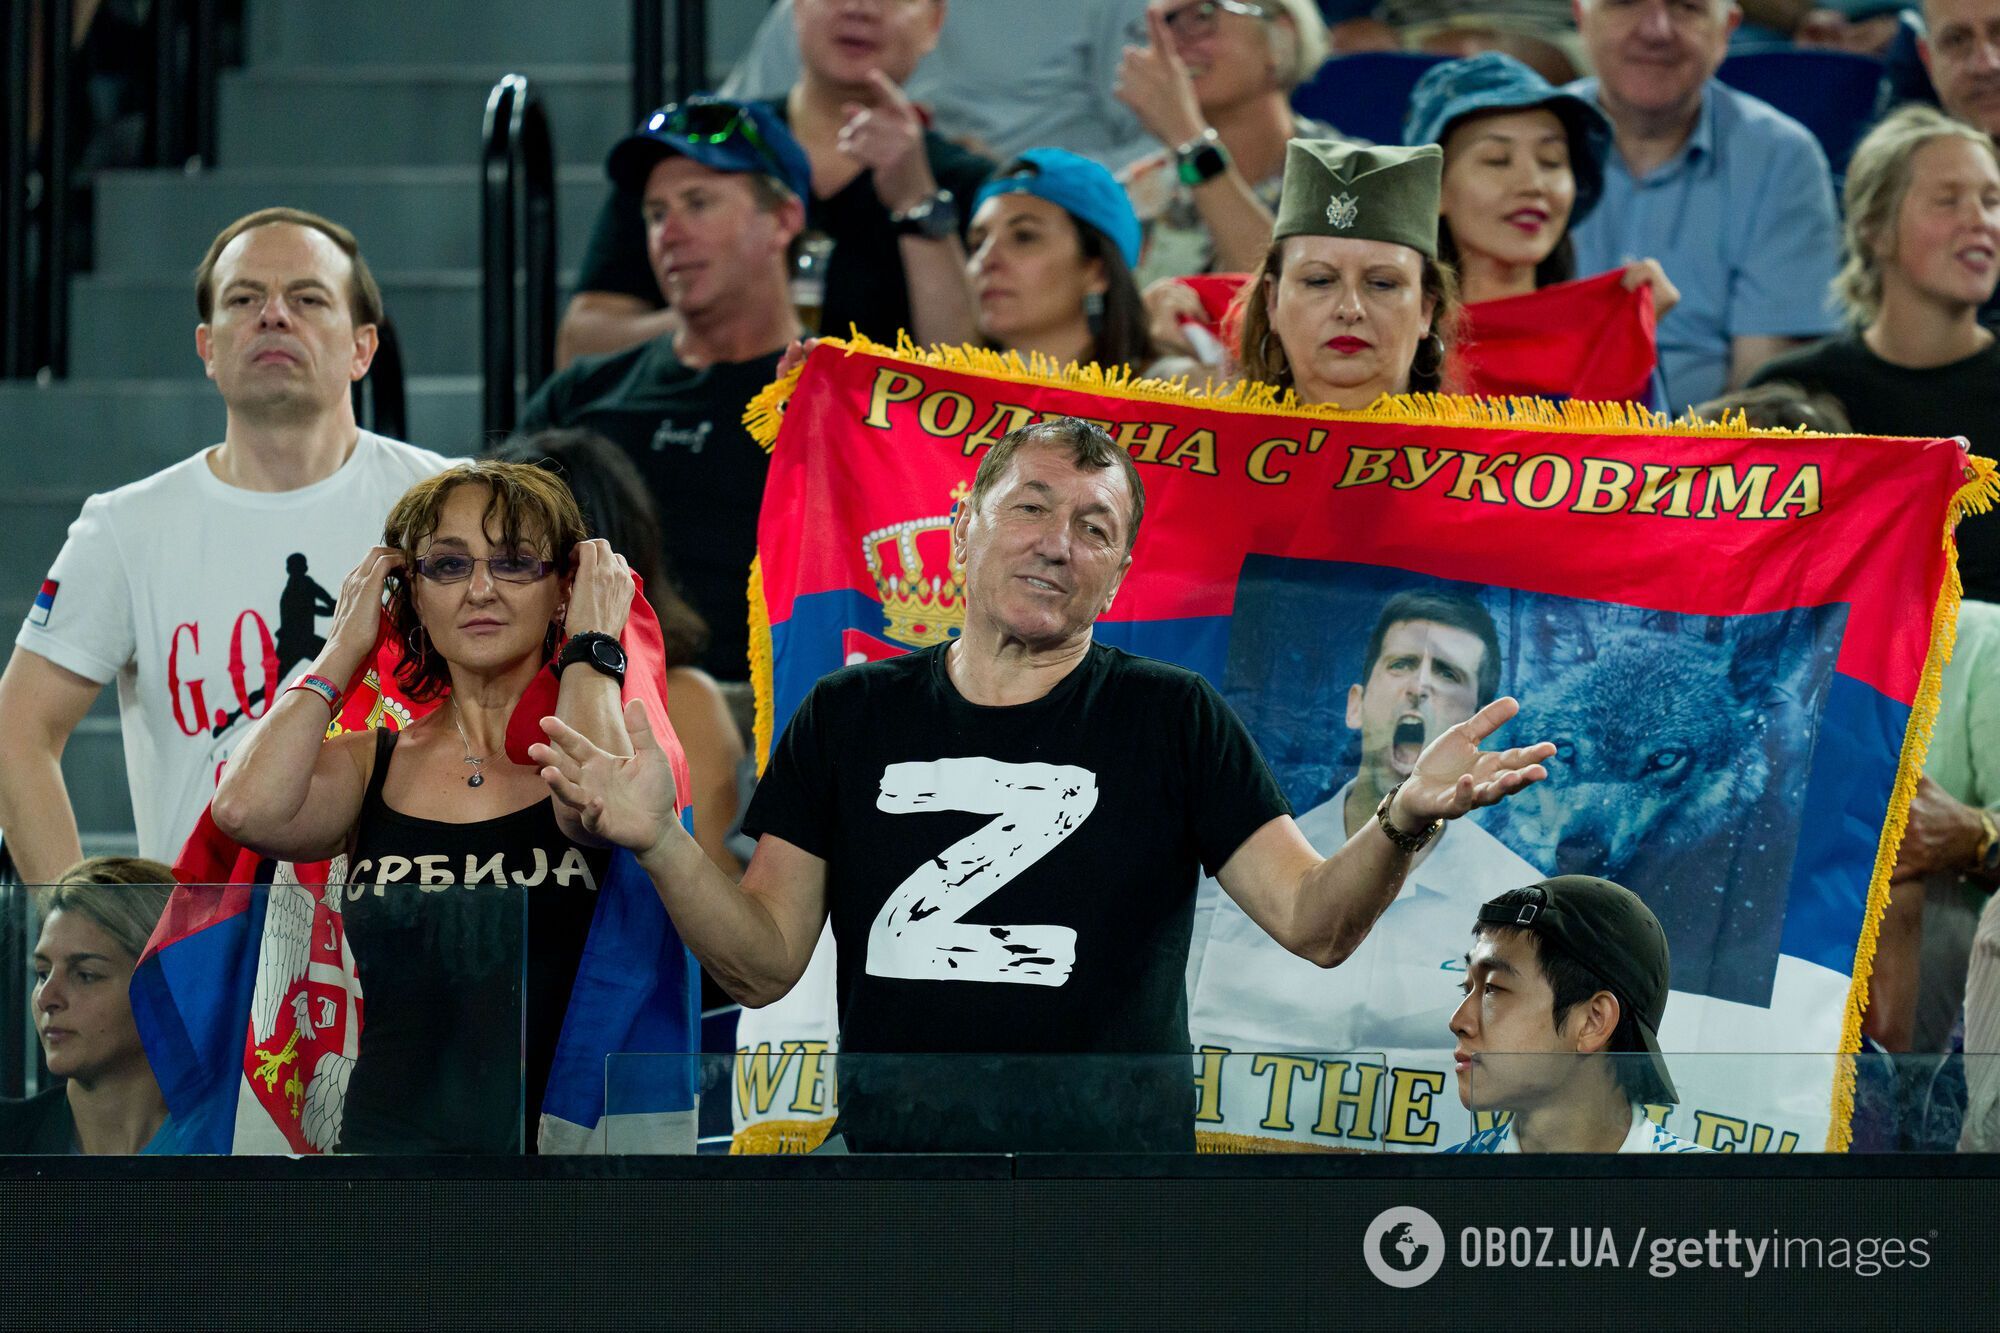 Джокович нелепо оправдался за отца, который устроил братания с Z-патриотами на Australian Open